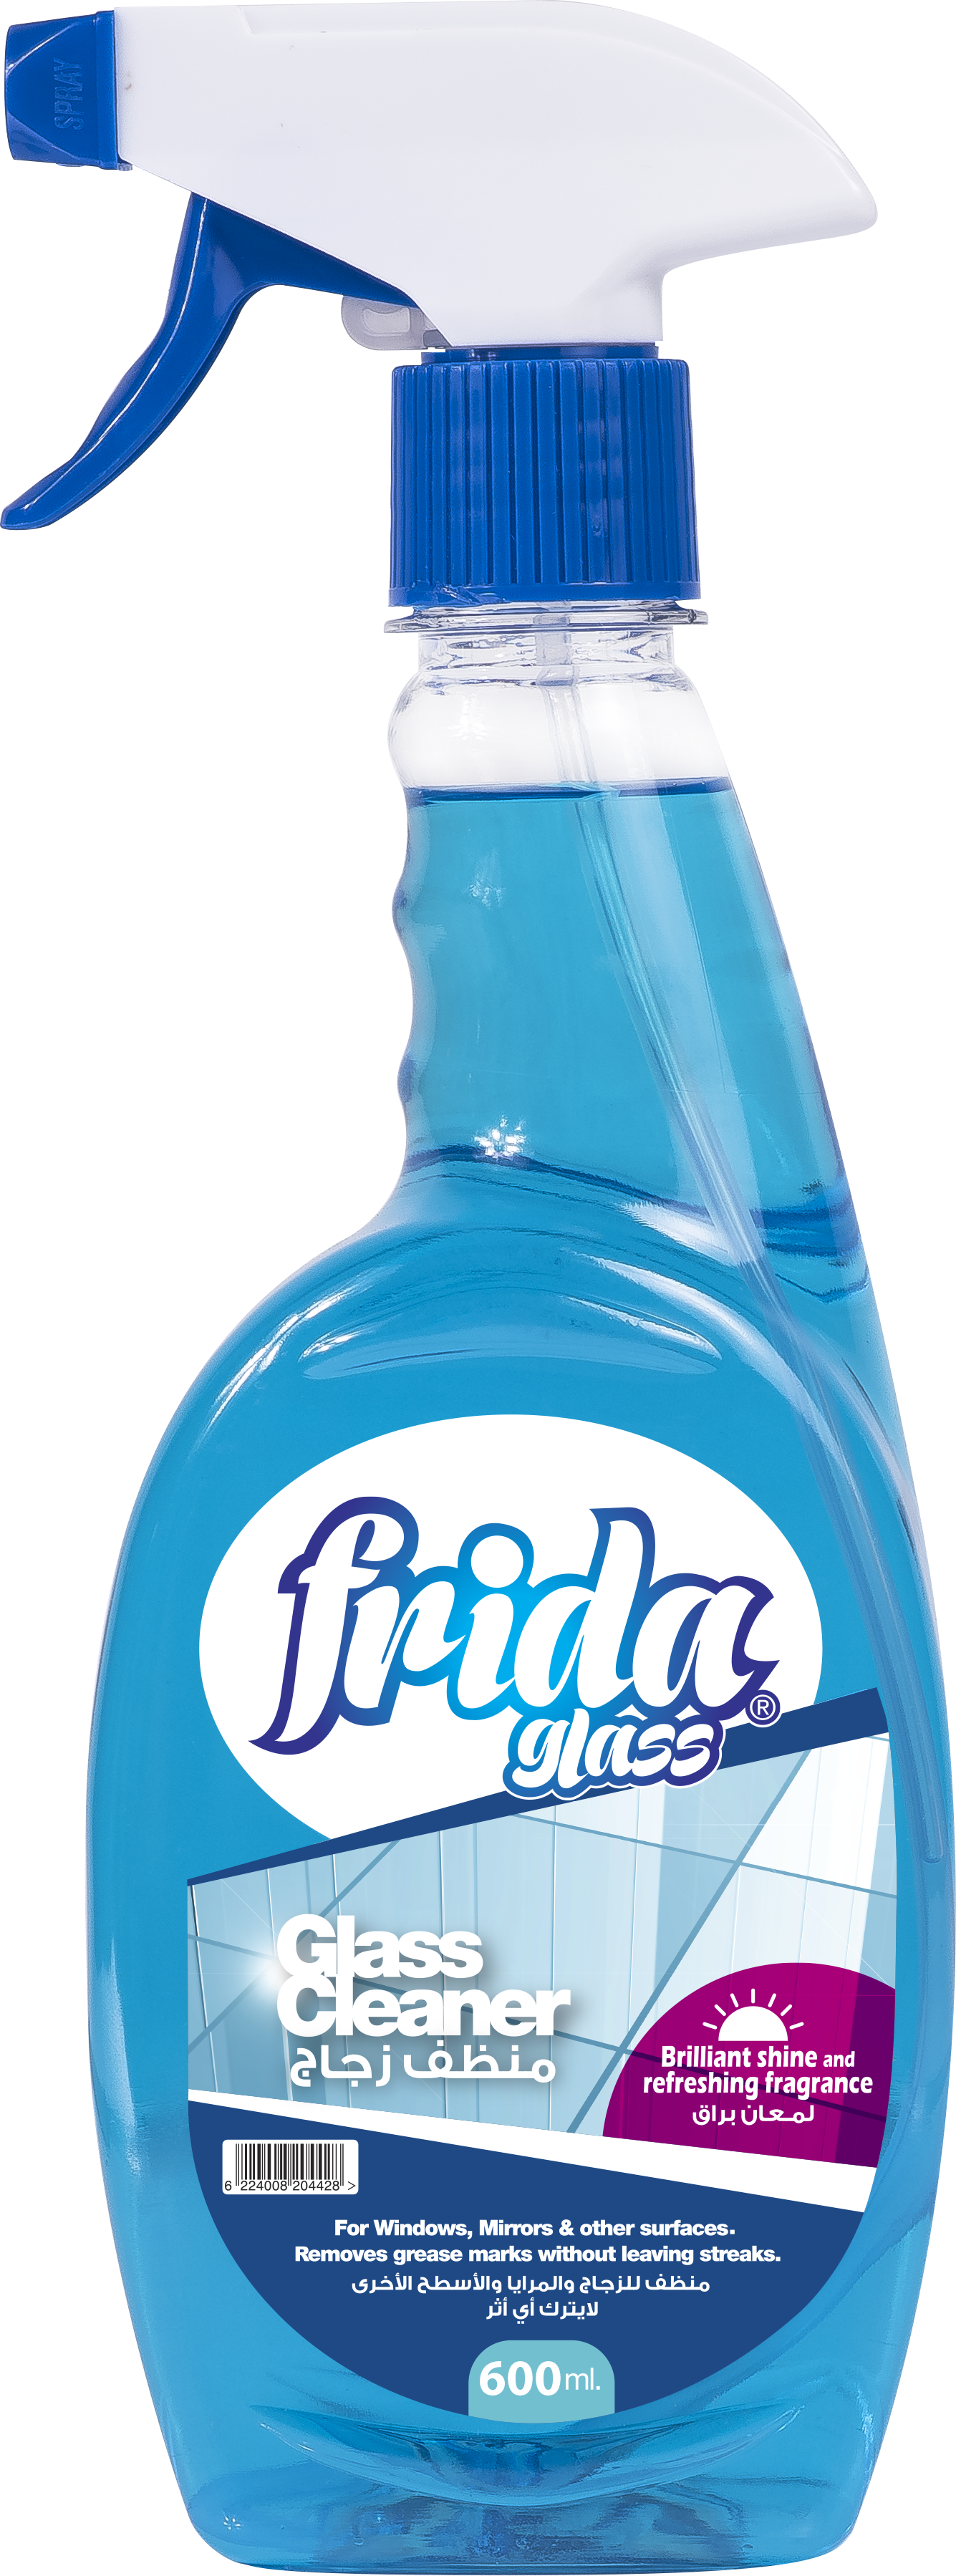 Frida Glass Cleaner